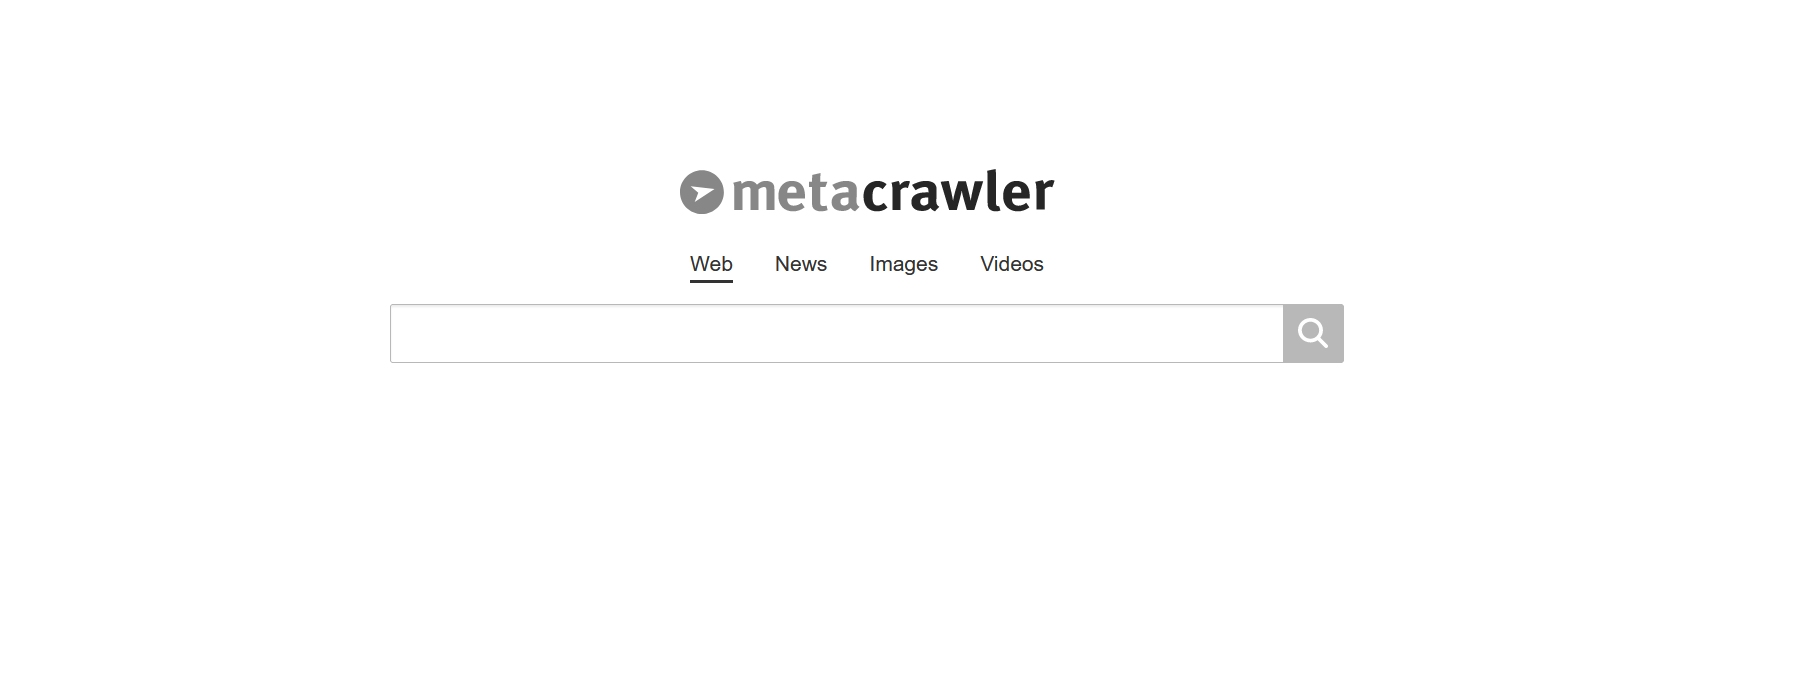 Buscadores aparte de Google: Metacrawler